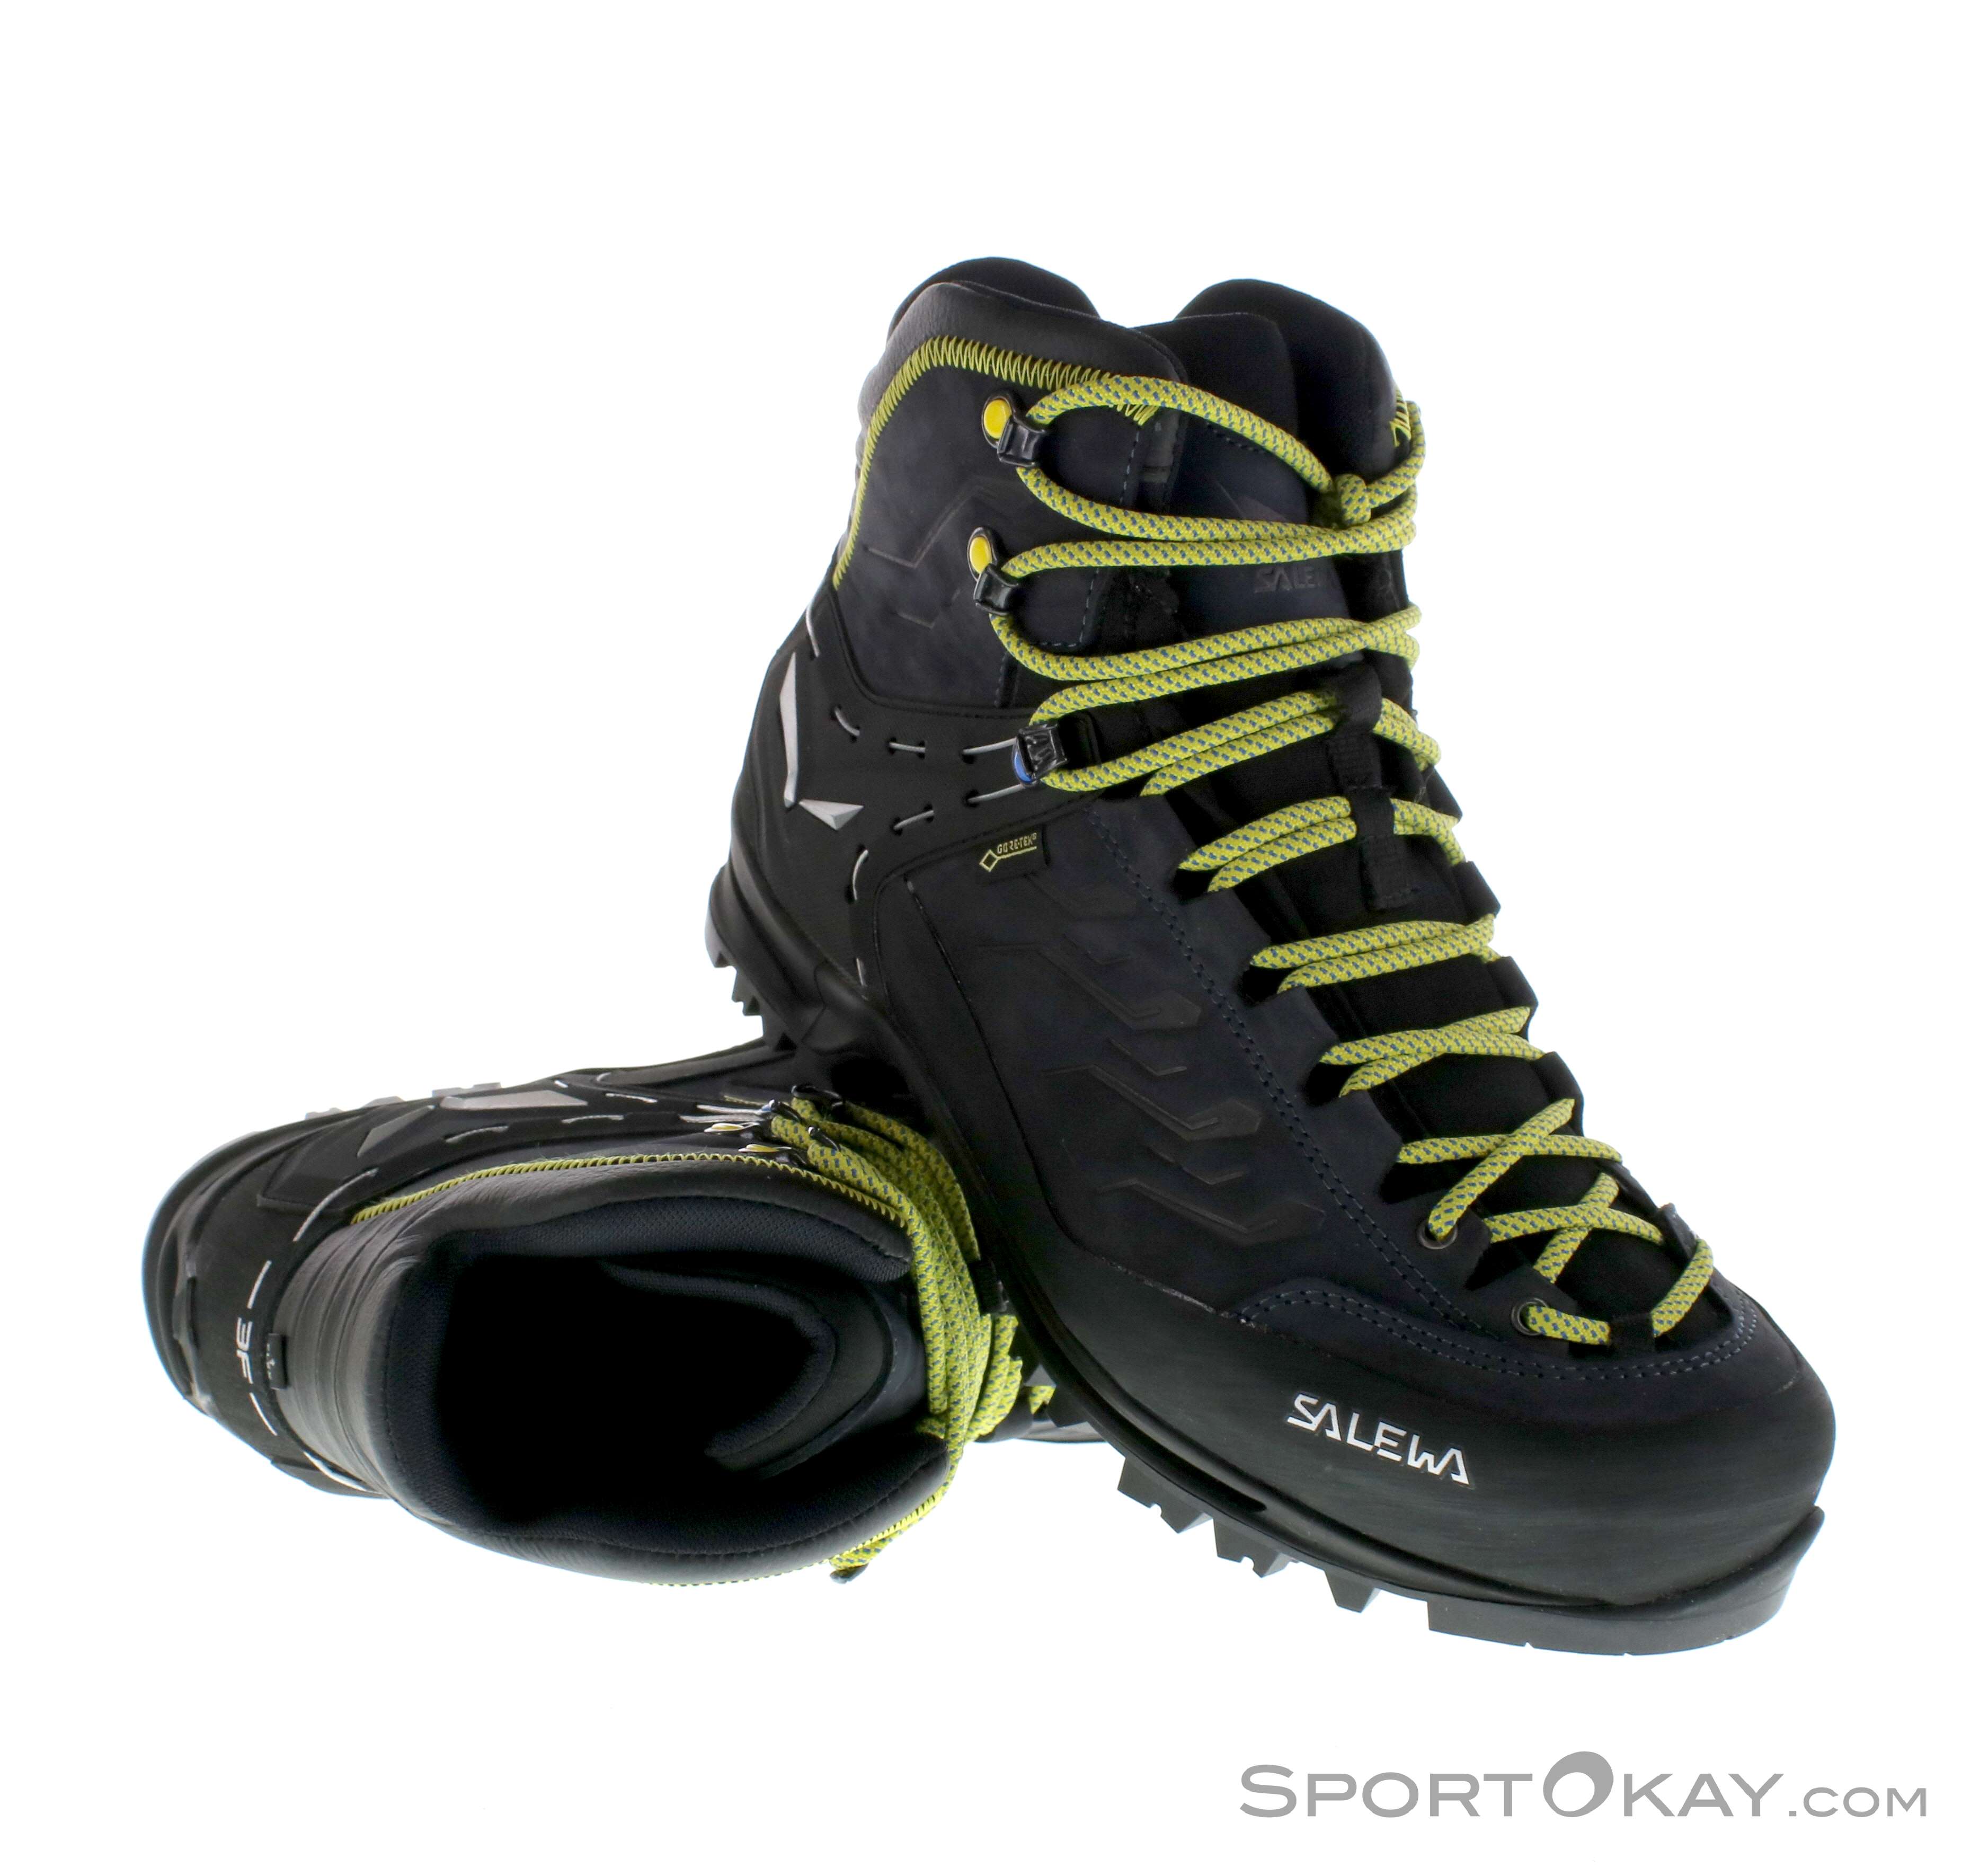 購買 ウィングトッポギSalewa Rapace GTX 登山ブーツ メンズ US サイズ: 9.5 カラー: ブラック 